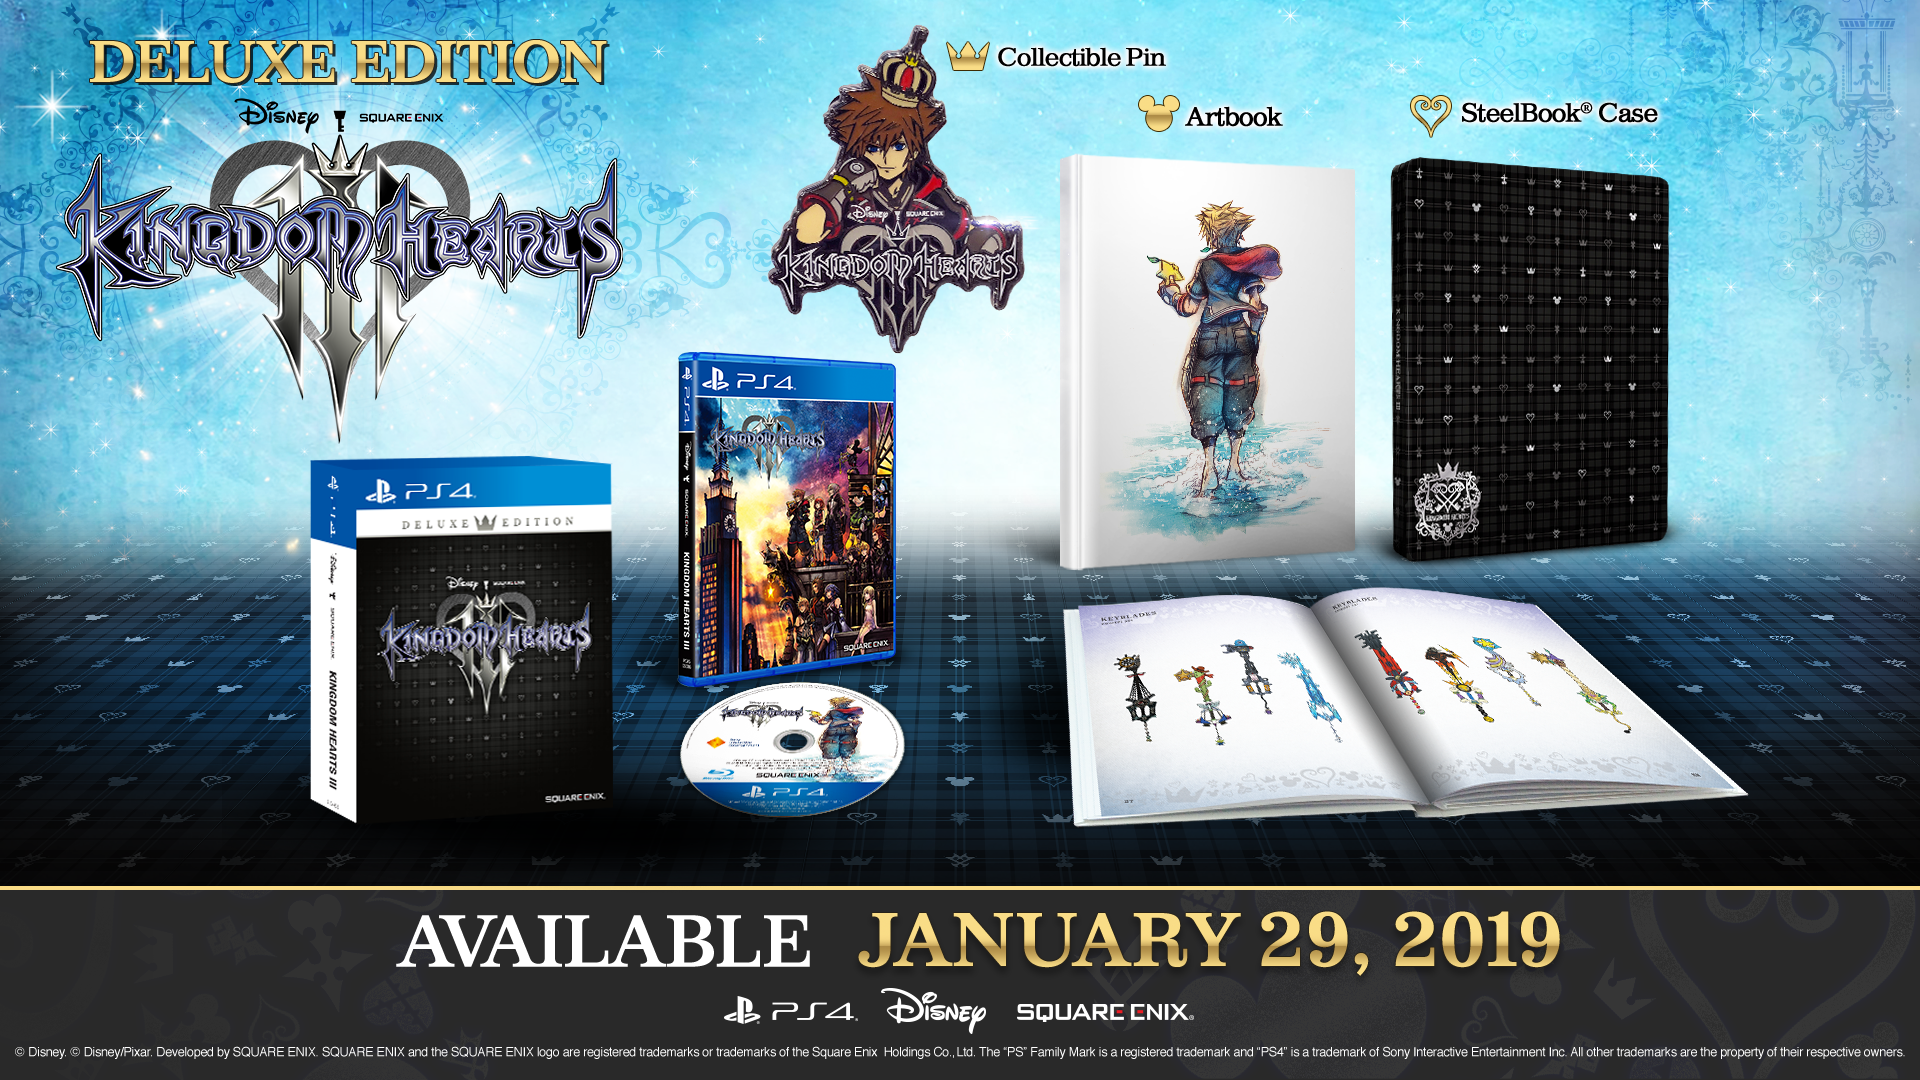 เปิดวันวางจำหน่าย Kingdom Hearts III ในไทย 29 ม.ค. 2019 พร้อมเผยของในเซ็ต Deluxe Edition!